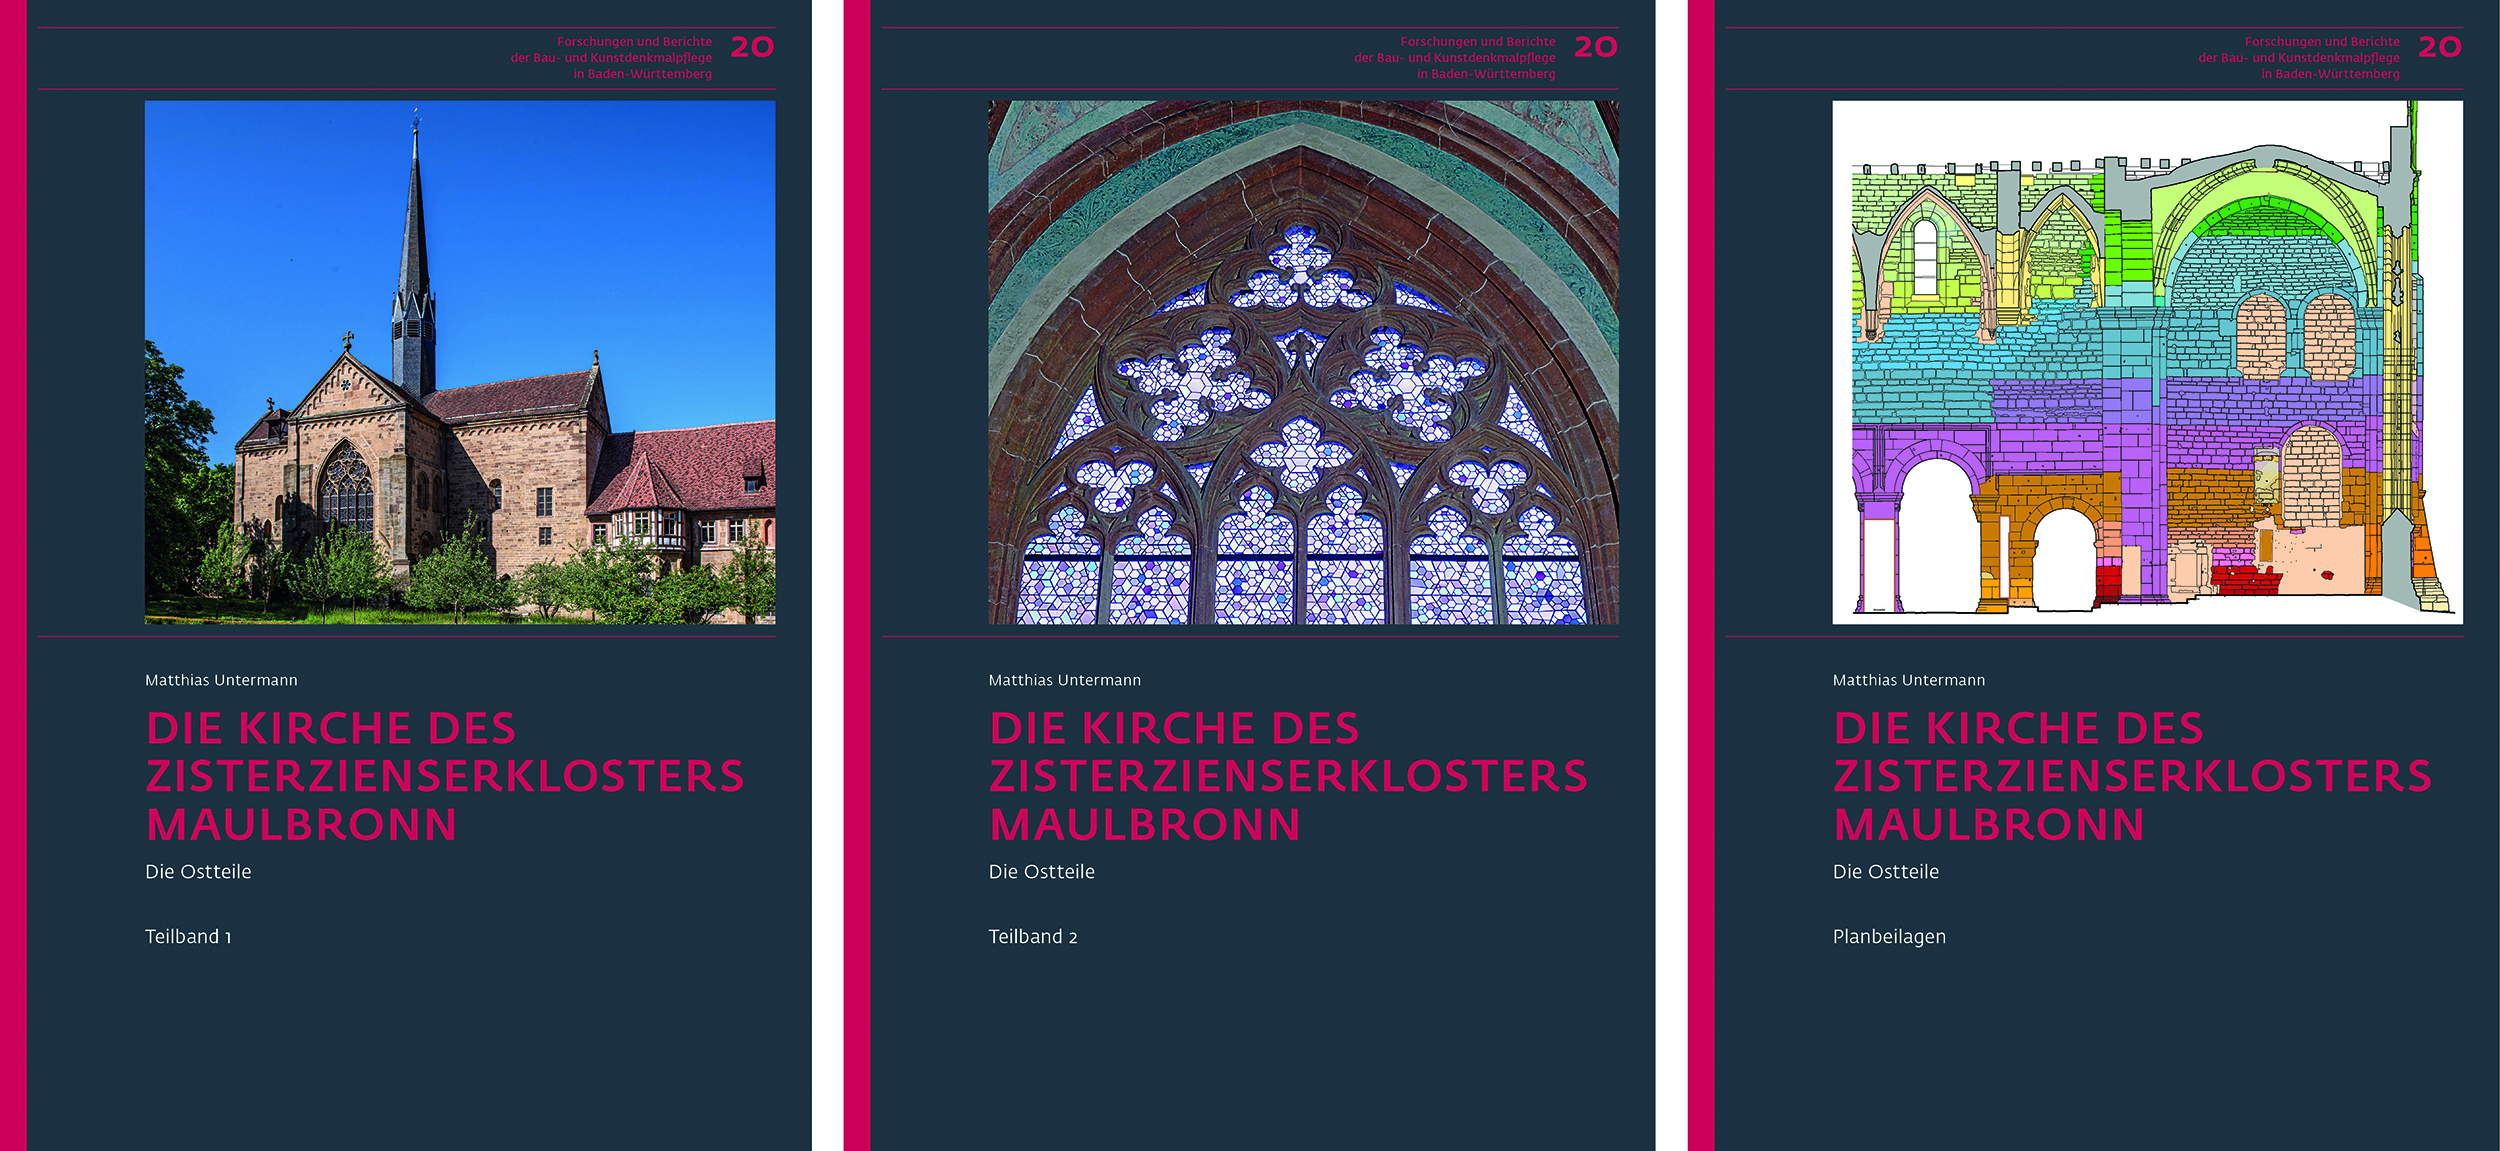 Matthias Untermann: Die Kirche des Zisterzienserklosters Maulbronn